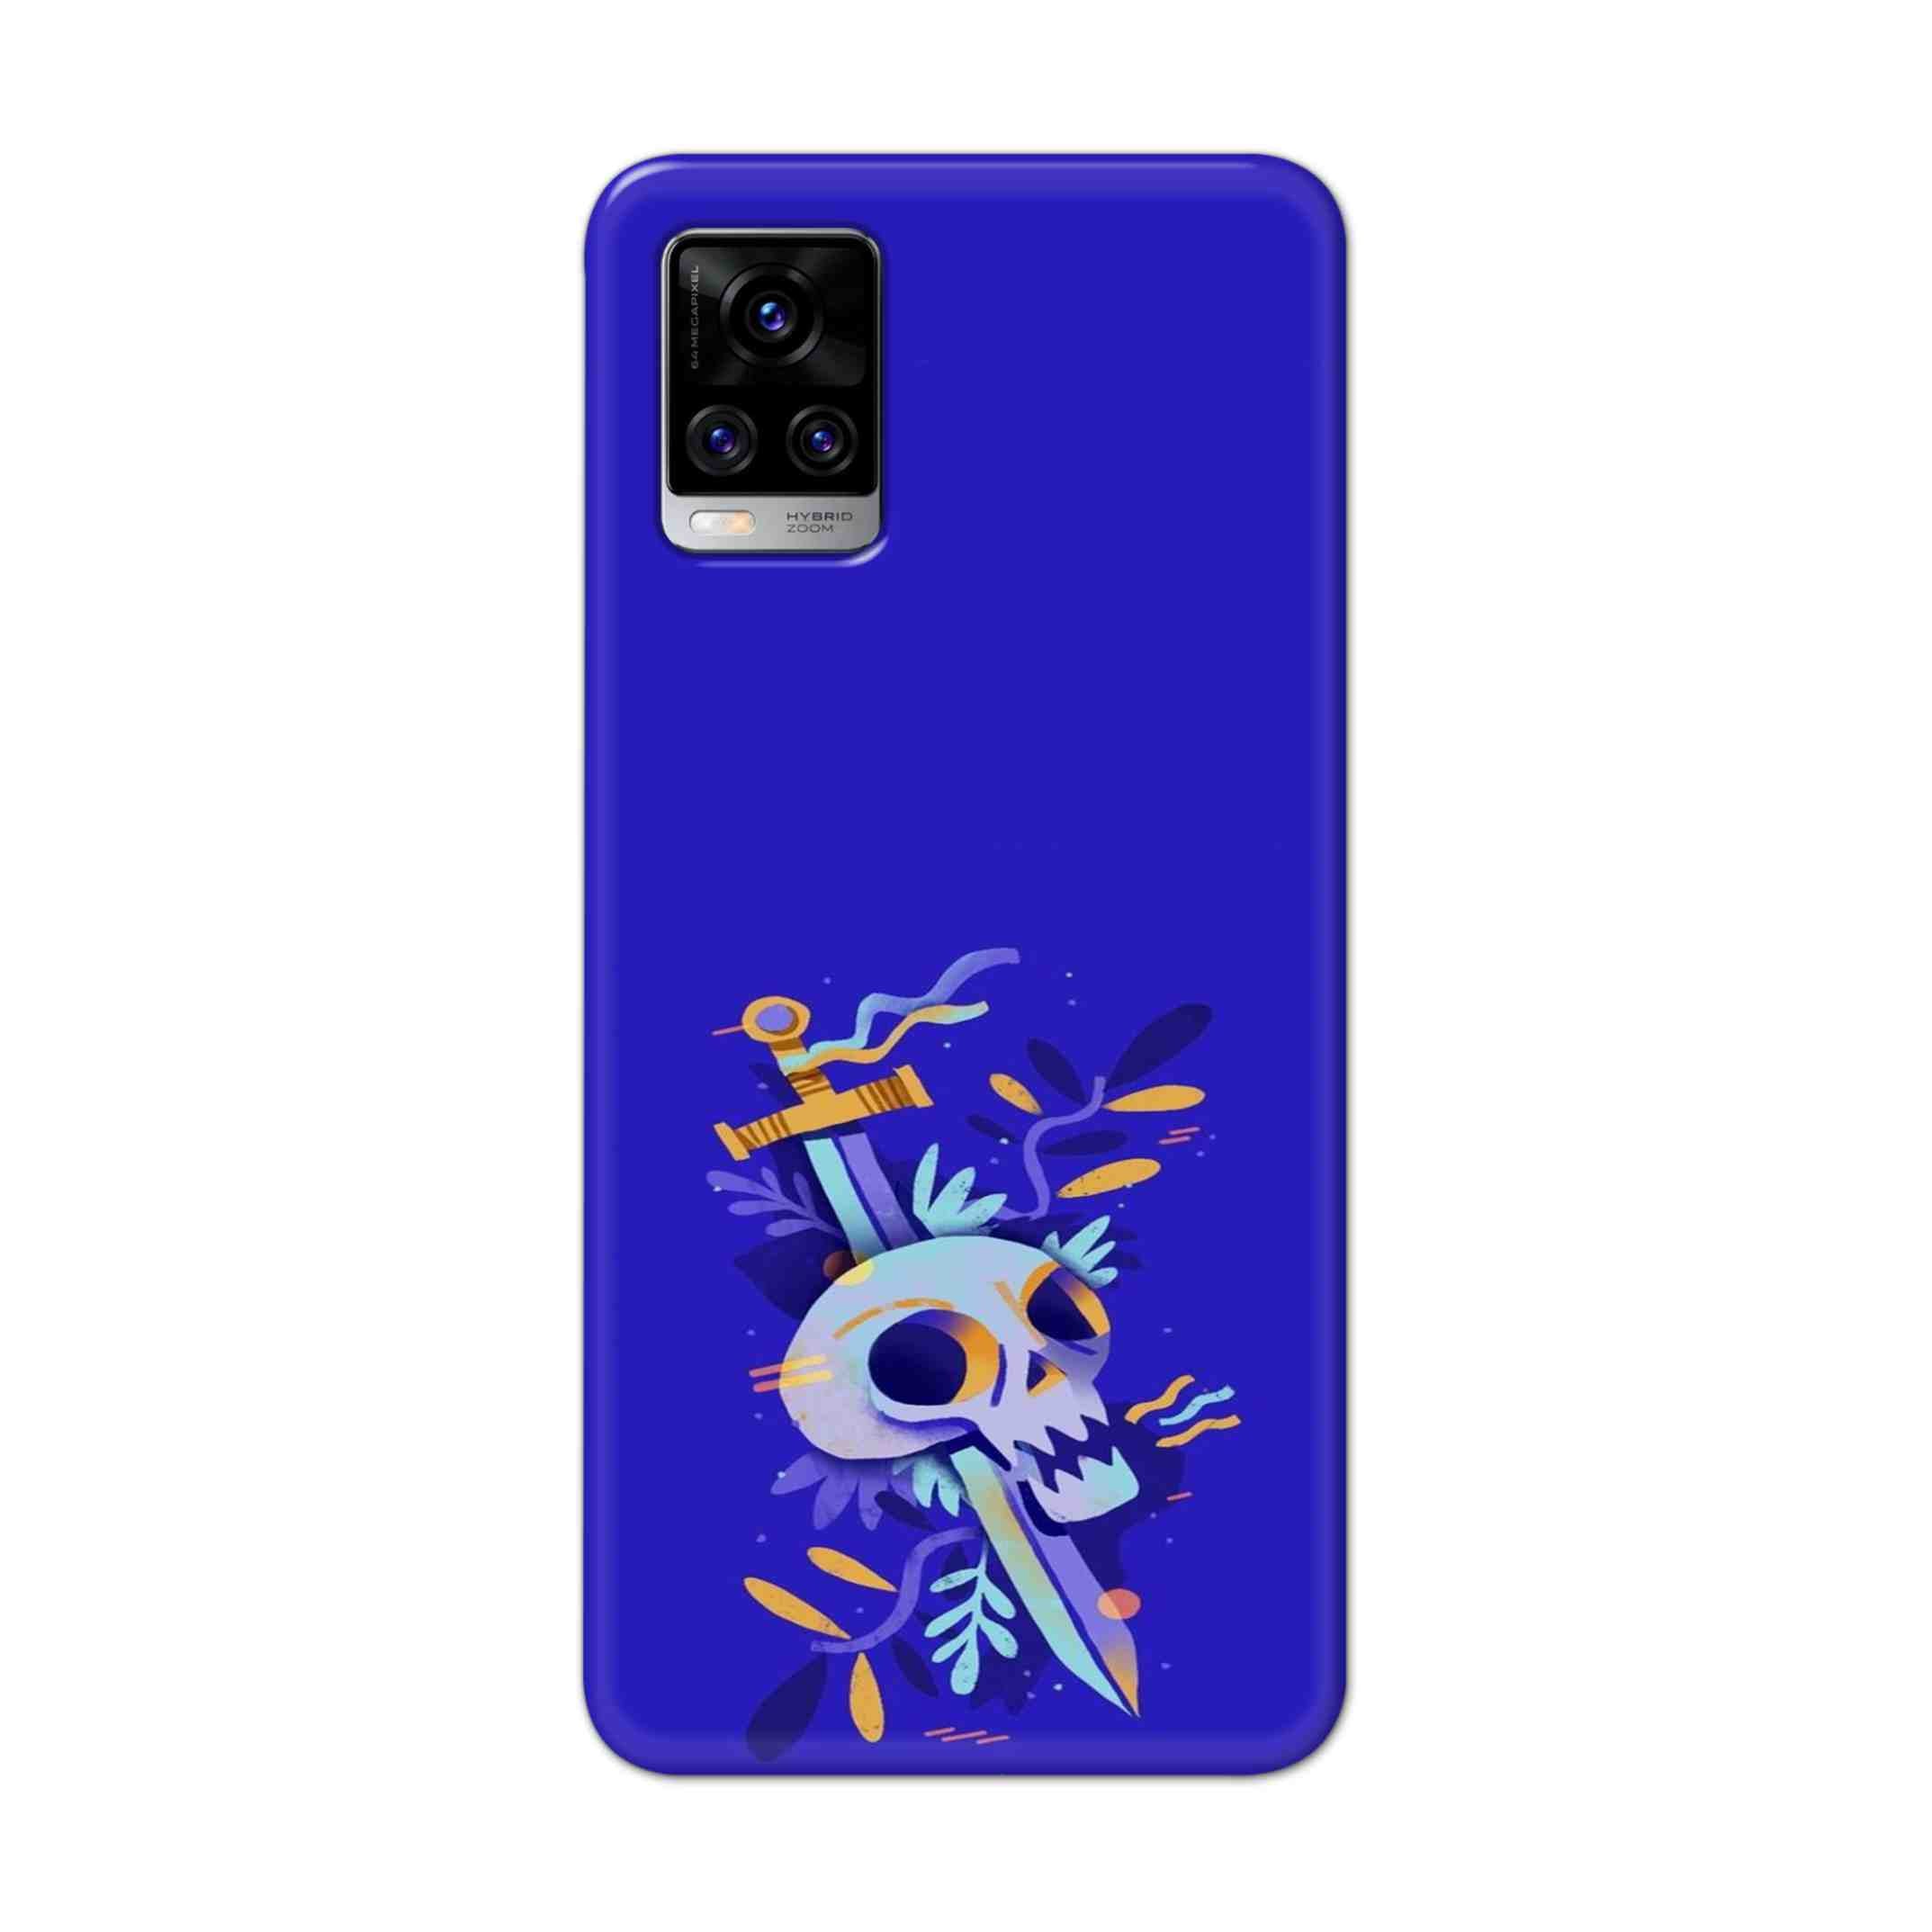 Buy Blue Skull Hard Back Mobile Phone Case Cover For Vivo V20 Pro Online